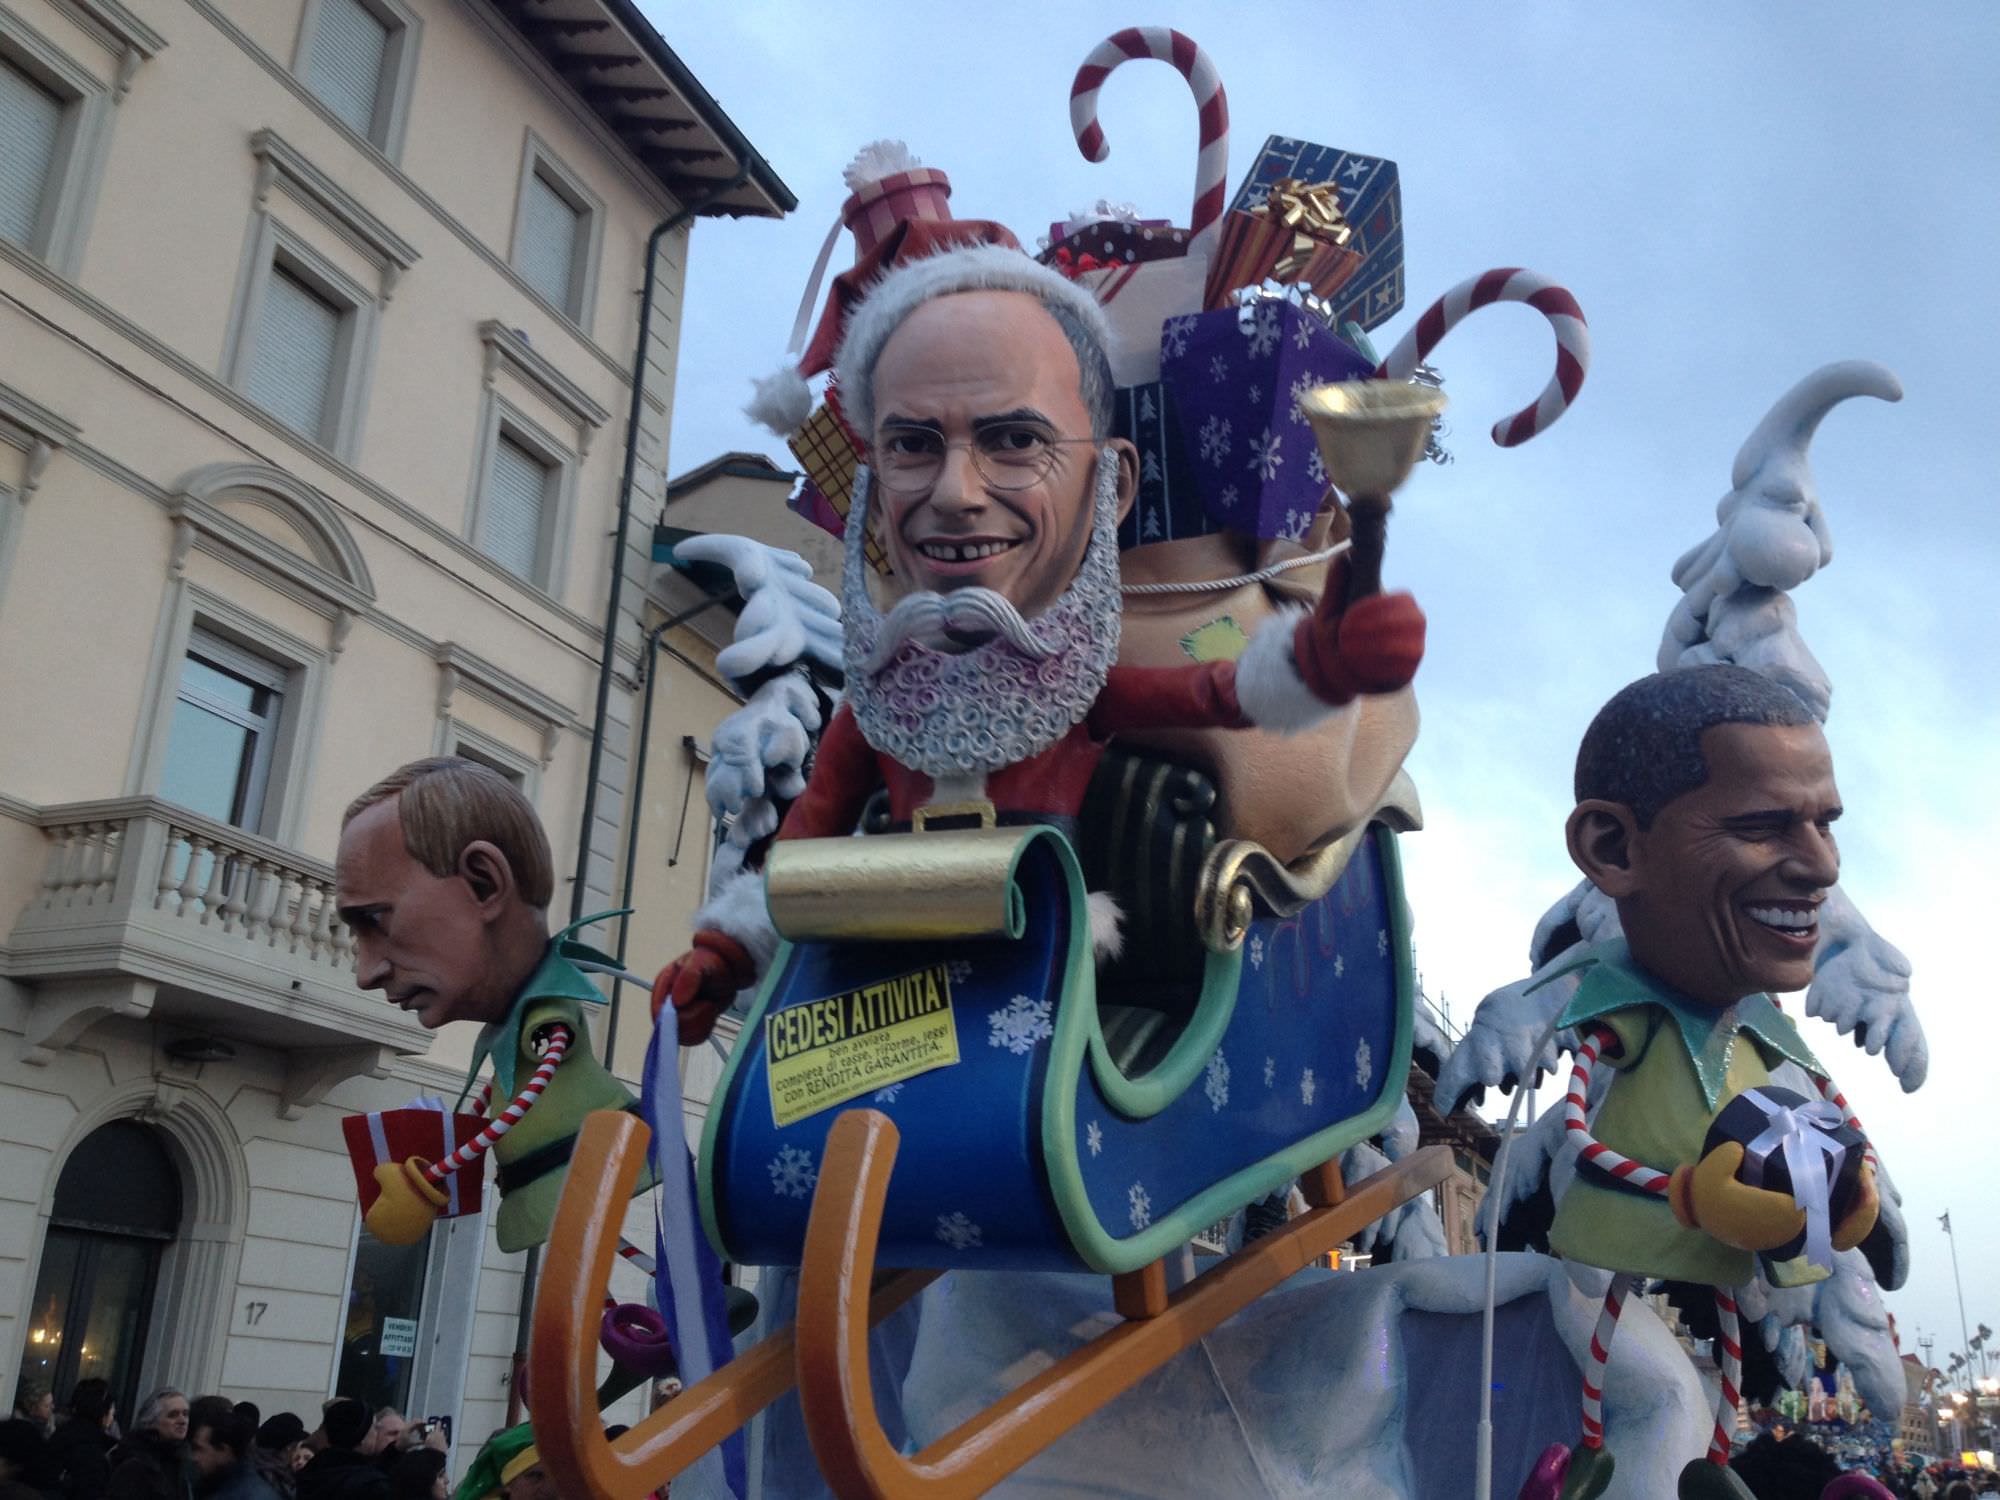 Carnevale di Viareggio 2014, le mascherate di gruppo: ancora tutti a rincorrere Bertozzi?